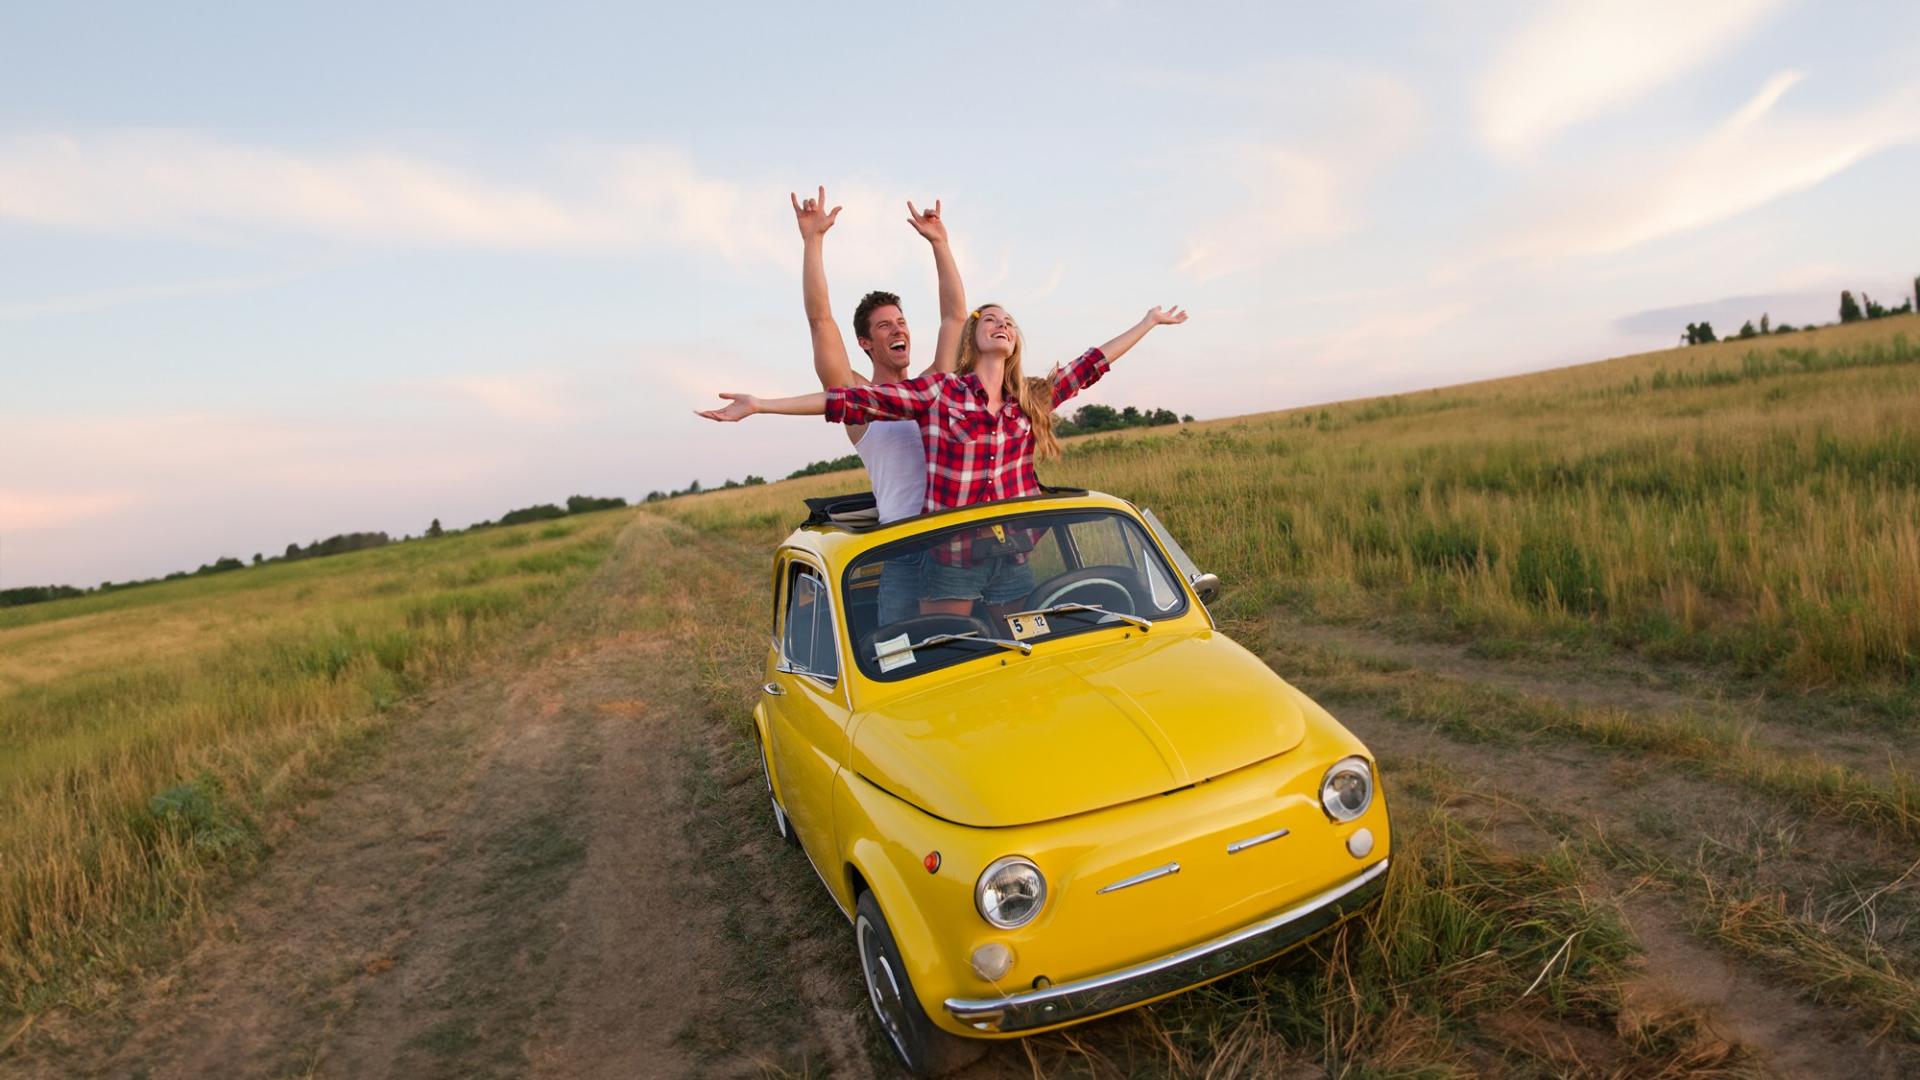 Ein Mann und eine Frau stehen lächelnd in einem gelben Auto mit geöffneten Dach und breiten die Arme aus